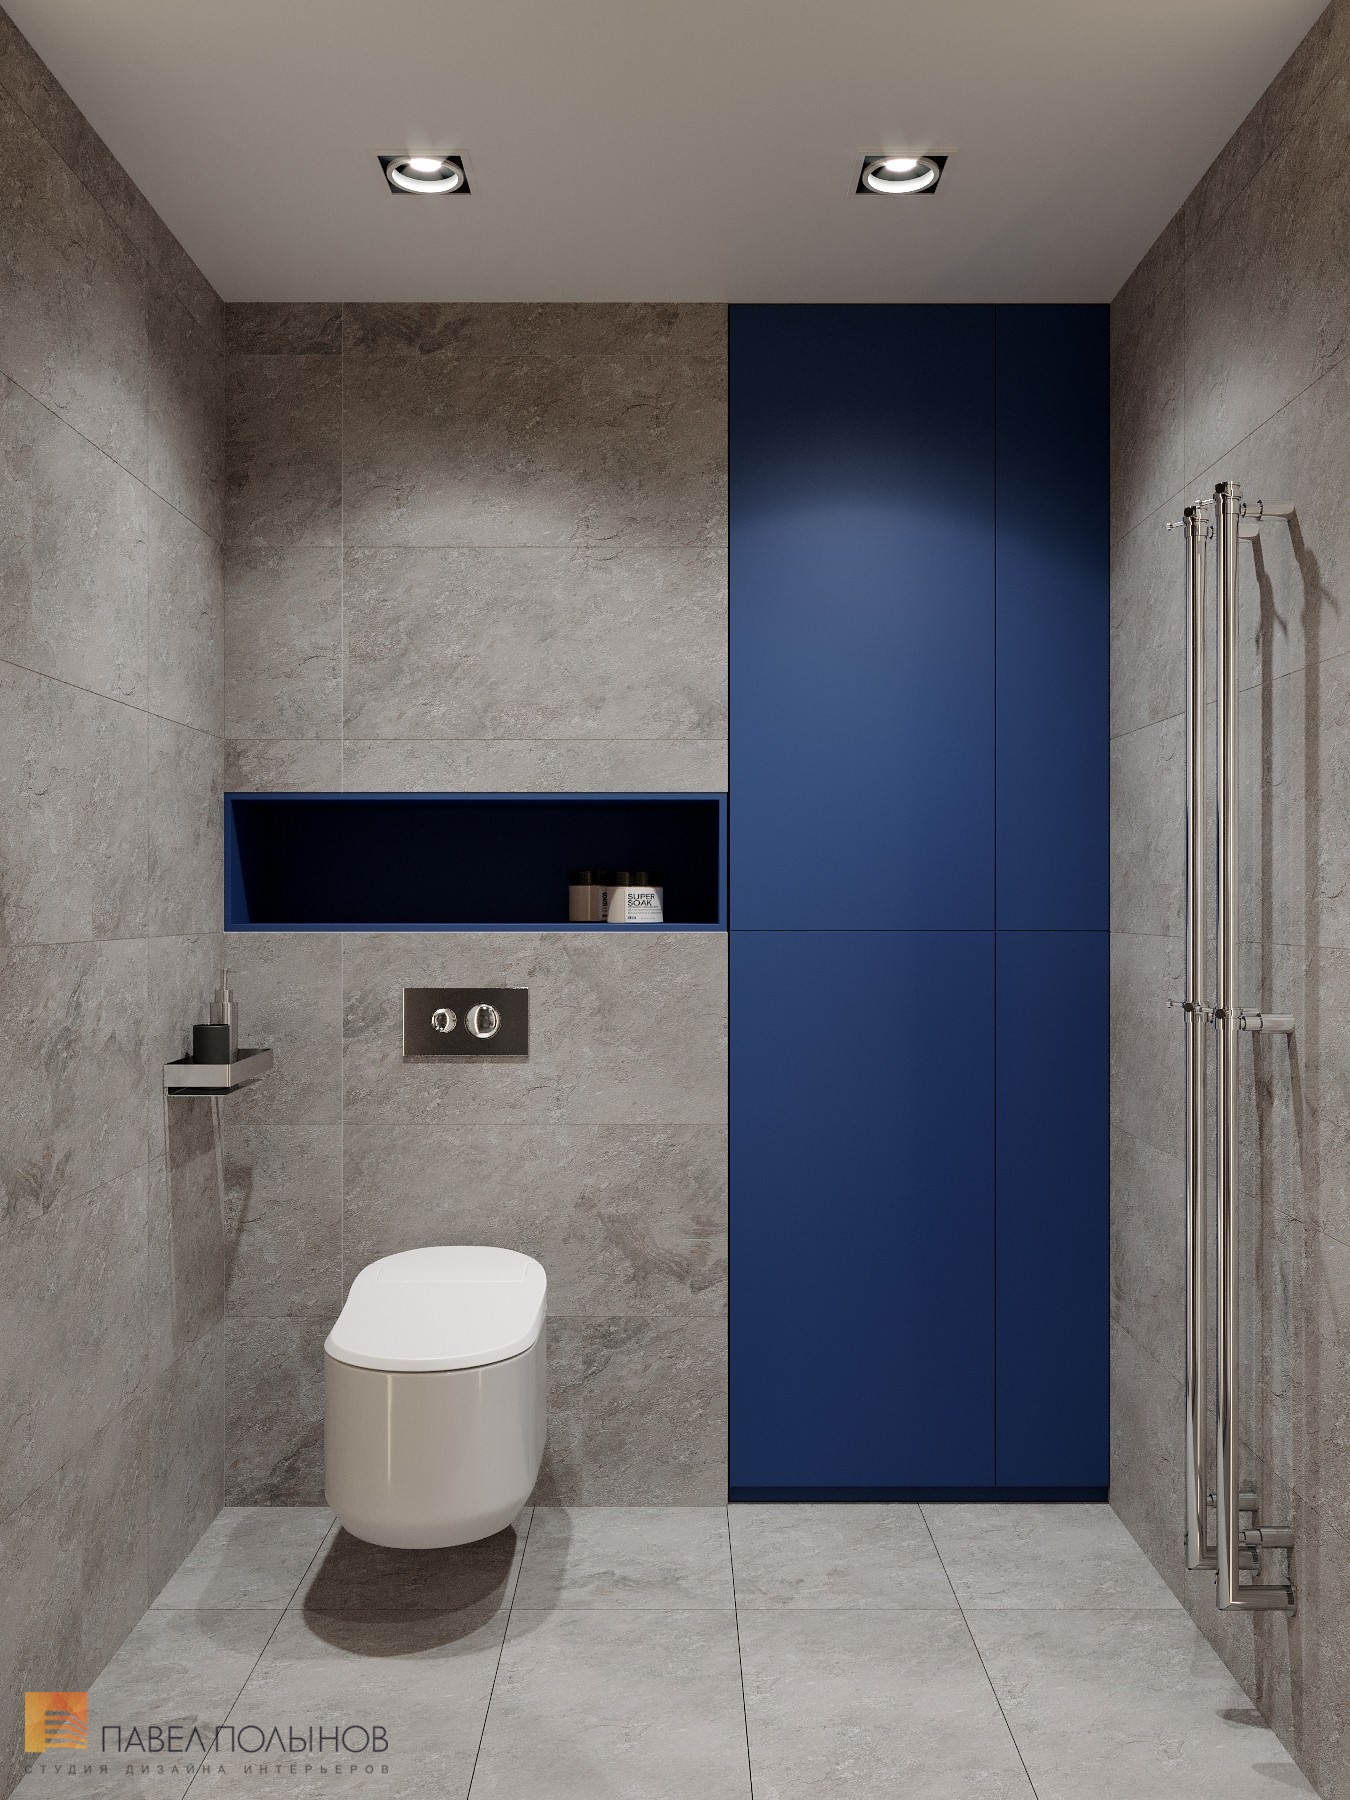 Фото ванная комната из проекта «Дизайн интерьер квартиры в ЖК «Кремлевские звезды», современный стиль, 133 кв.м.»